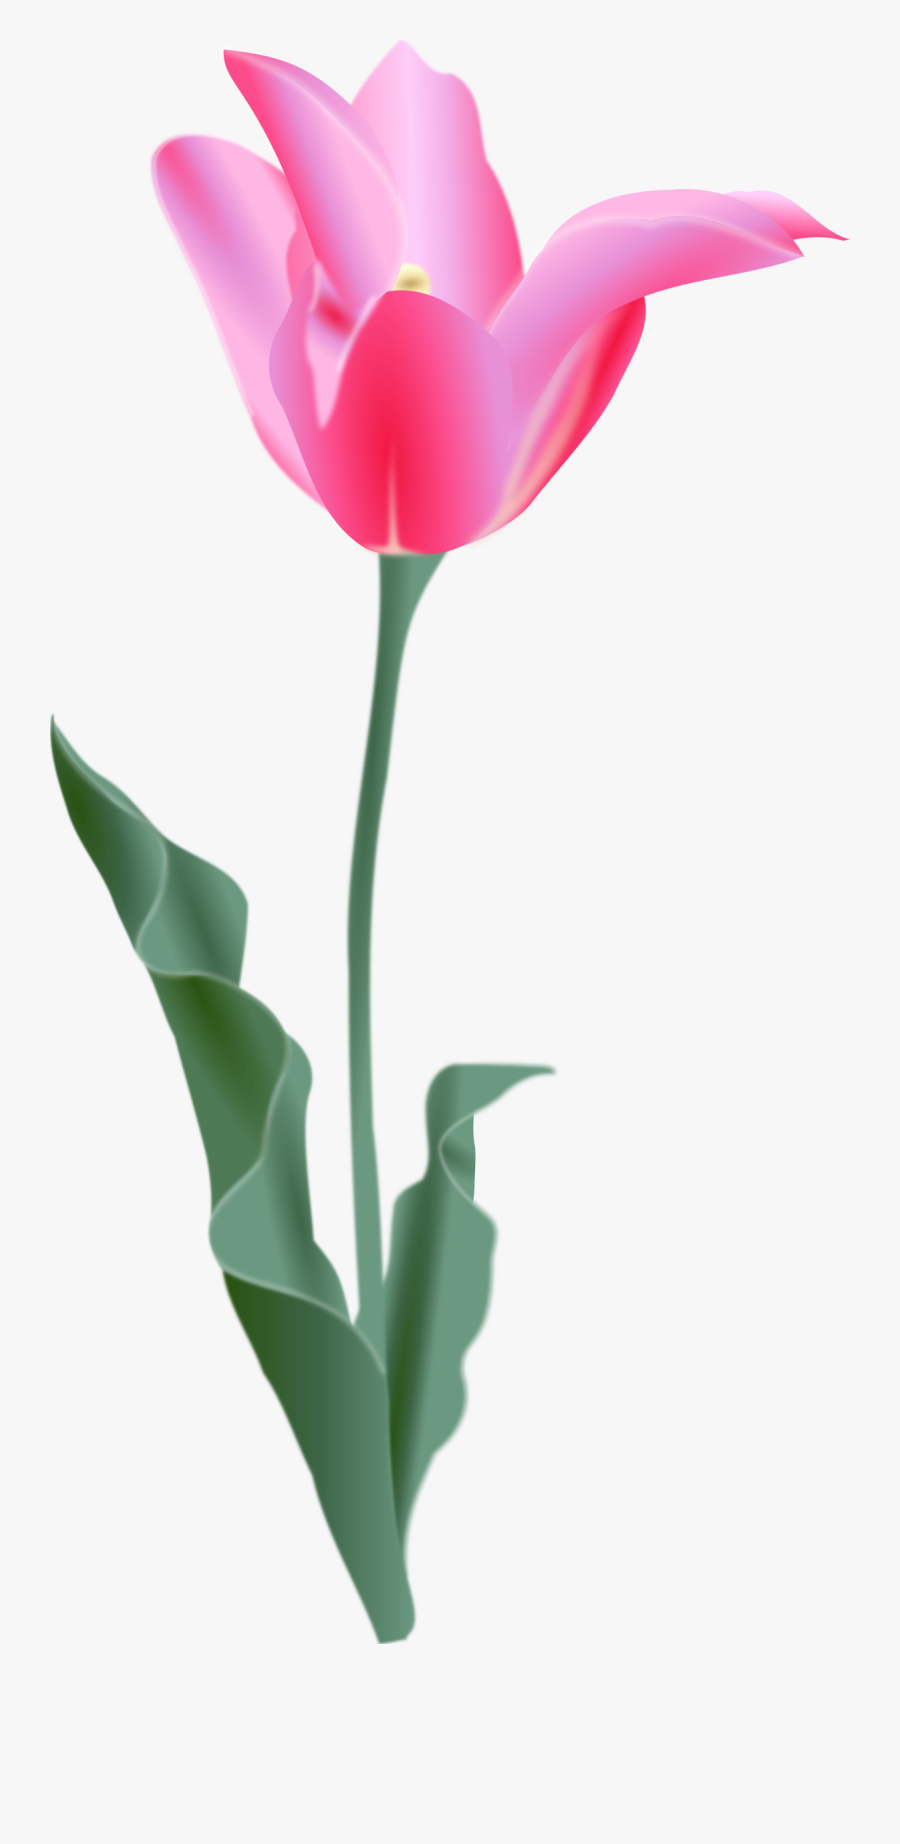 Tulip - Tulip Clip Art, Transparent Clipart